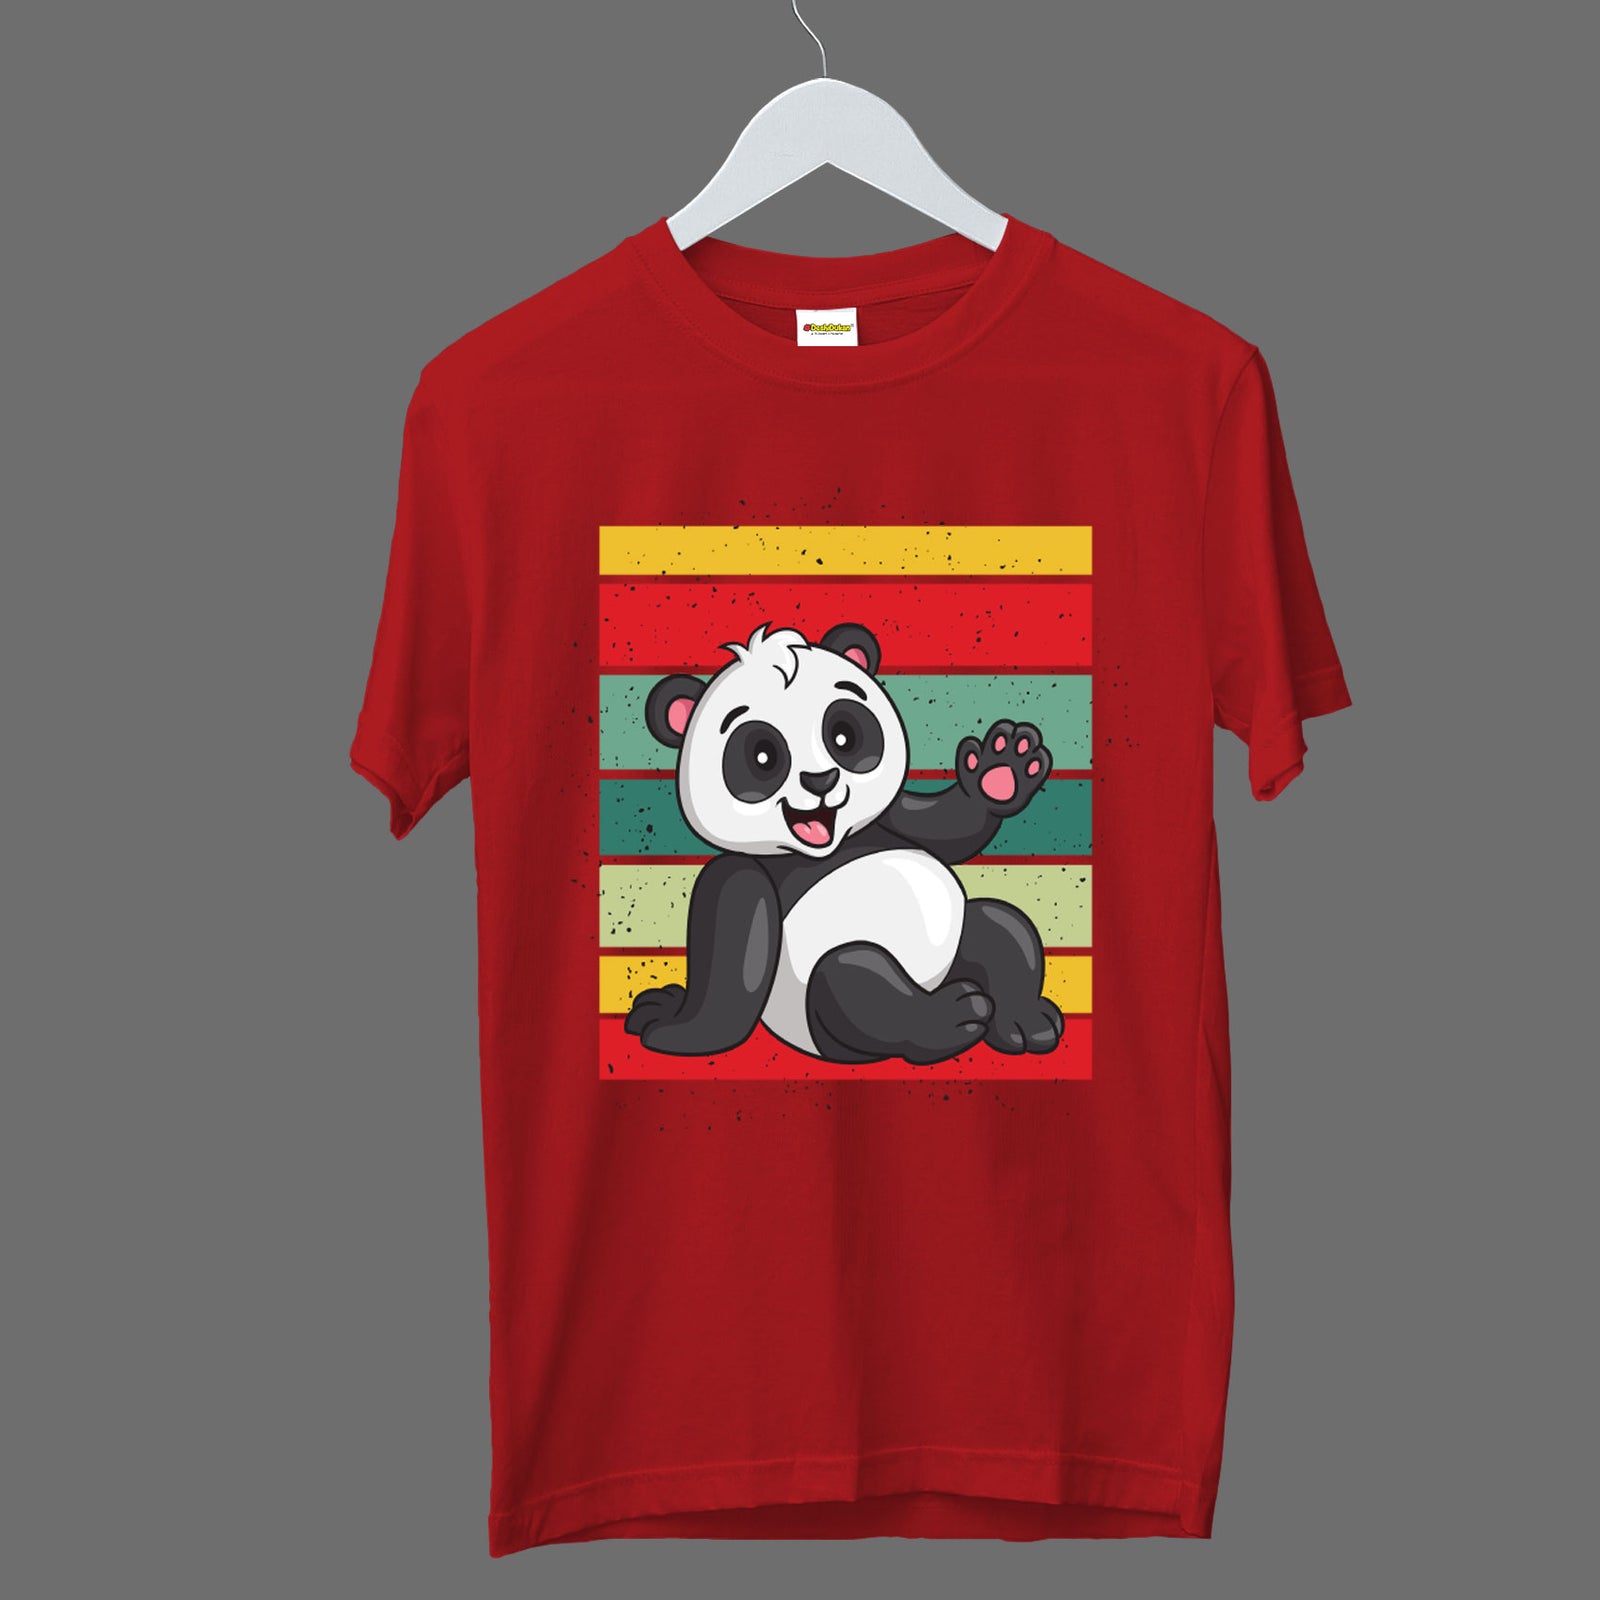 Friends Group T-shirt Combo – DeshiDukan Tshirt Lounge